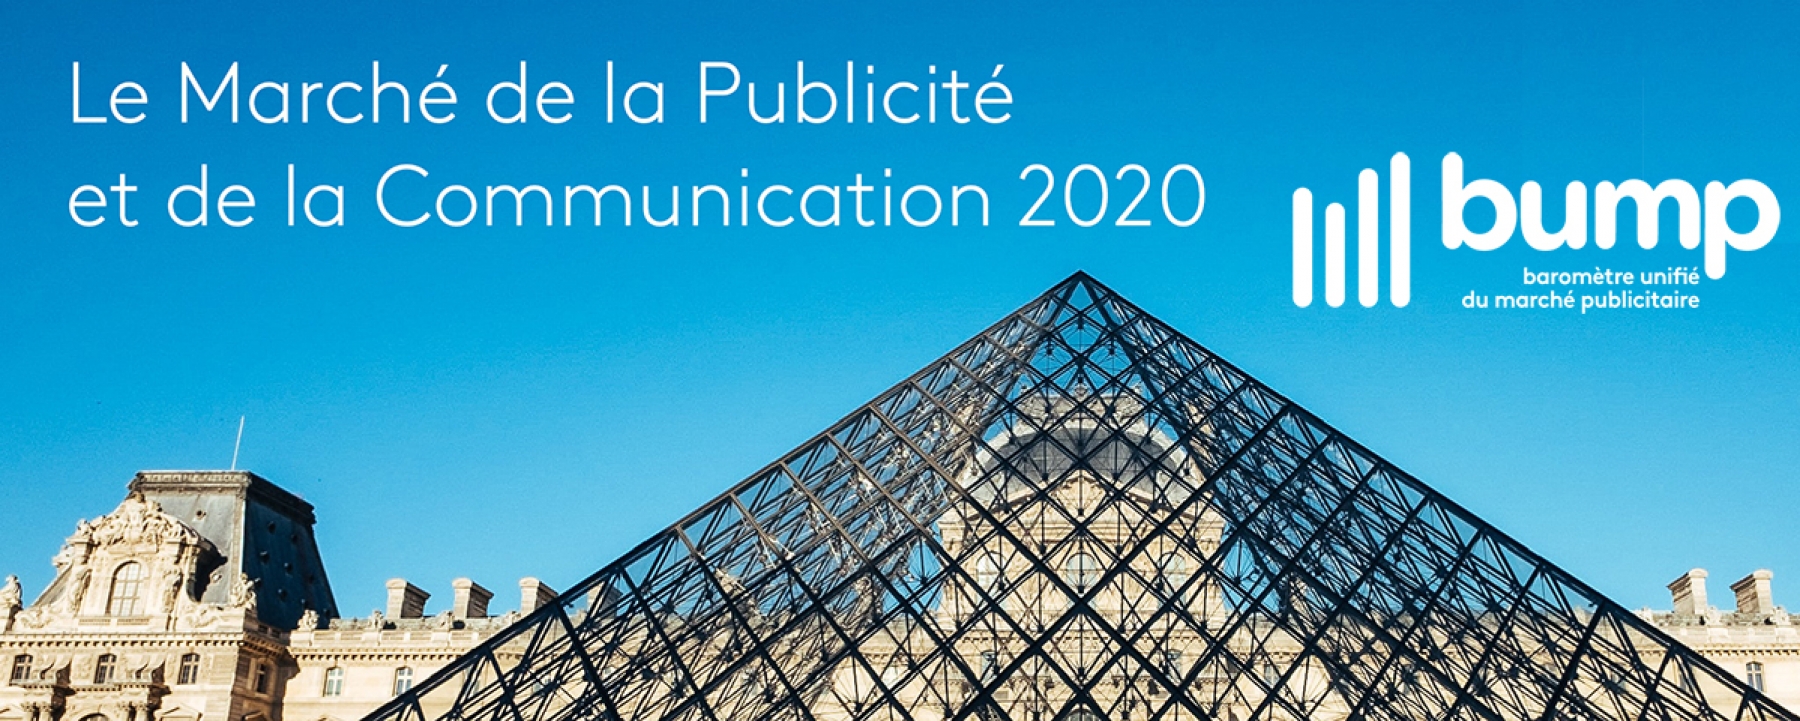 BUMP - Bilan annuel 2020 et prévisions pour l'année 2021, organisé par IREP, Kantar et France Pub le 16 mars